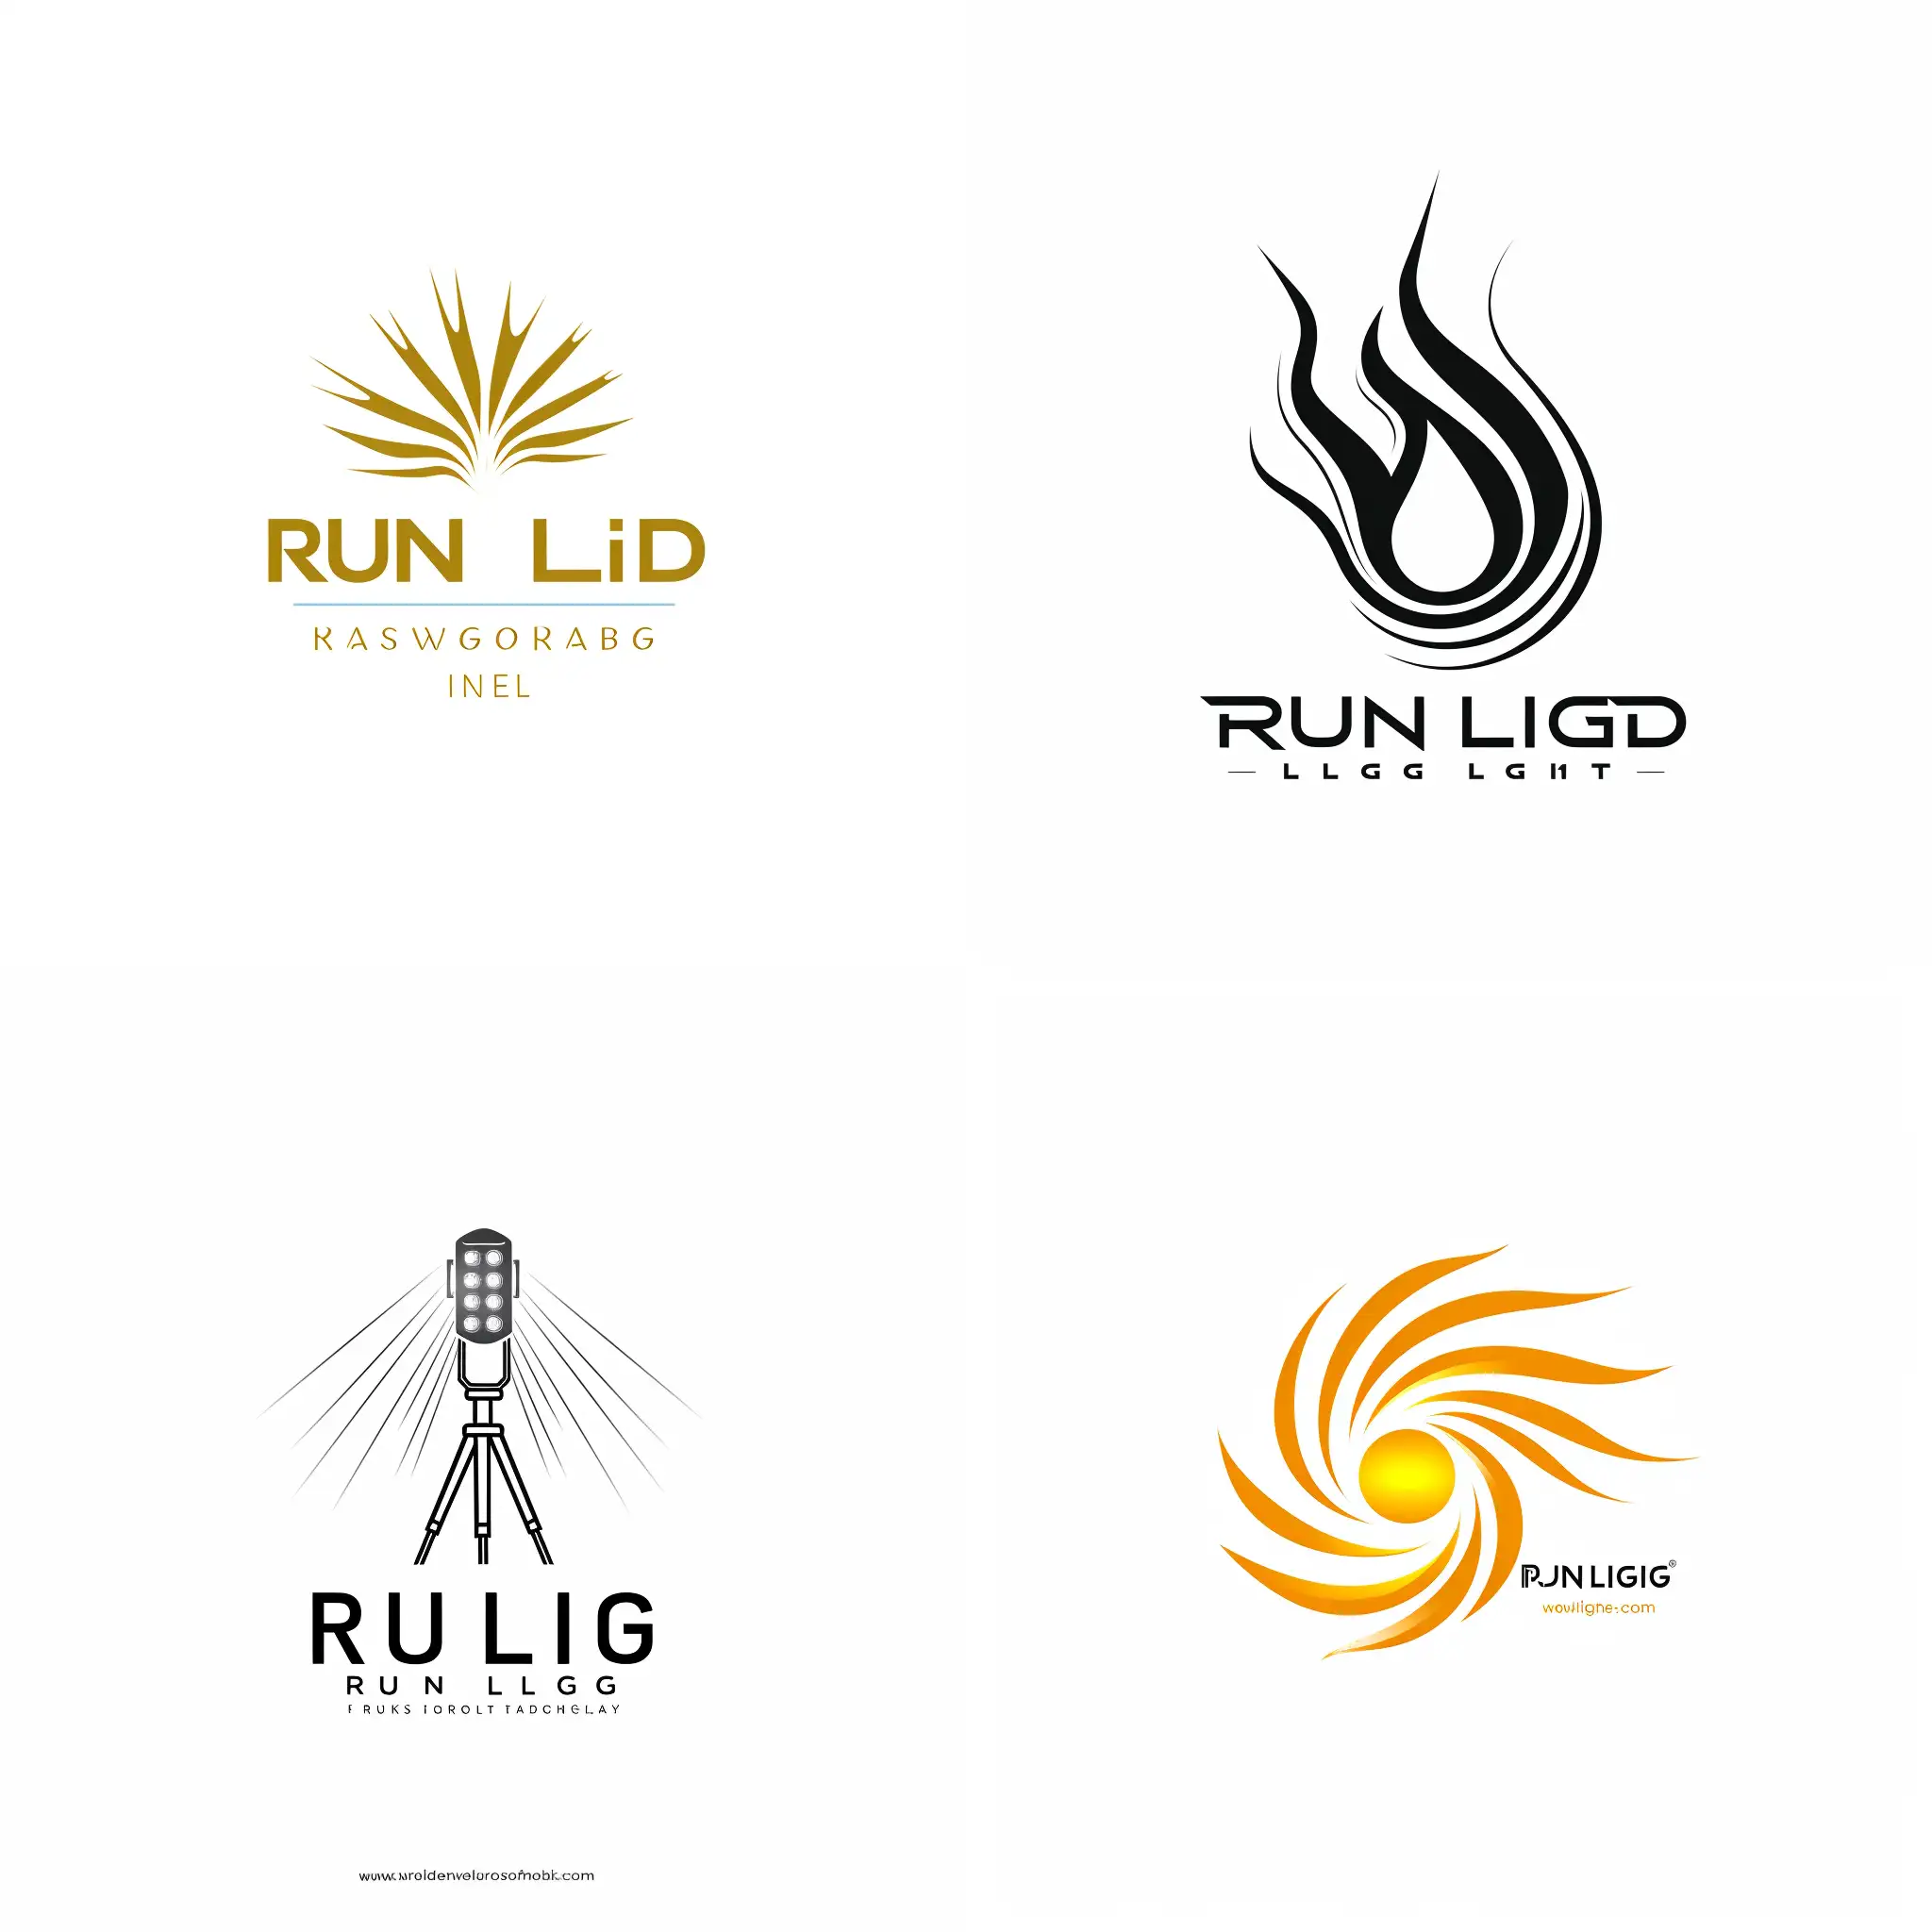 Run-Light-Sleek-Lighting-Equipment-Logo-on-White-Background